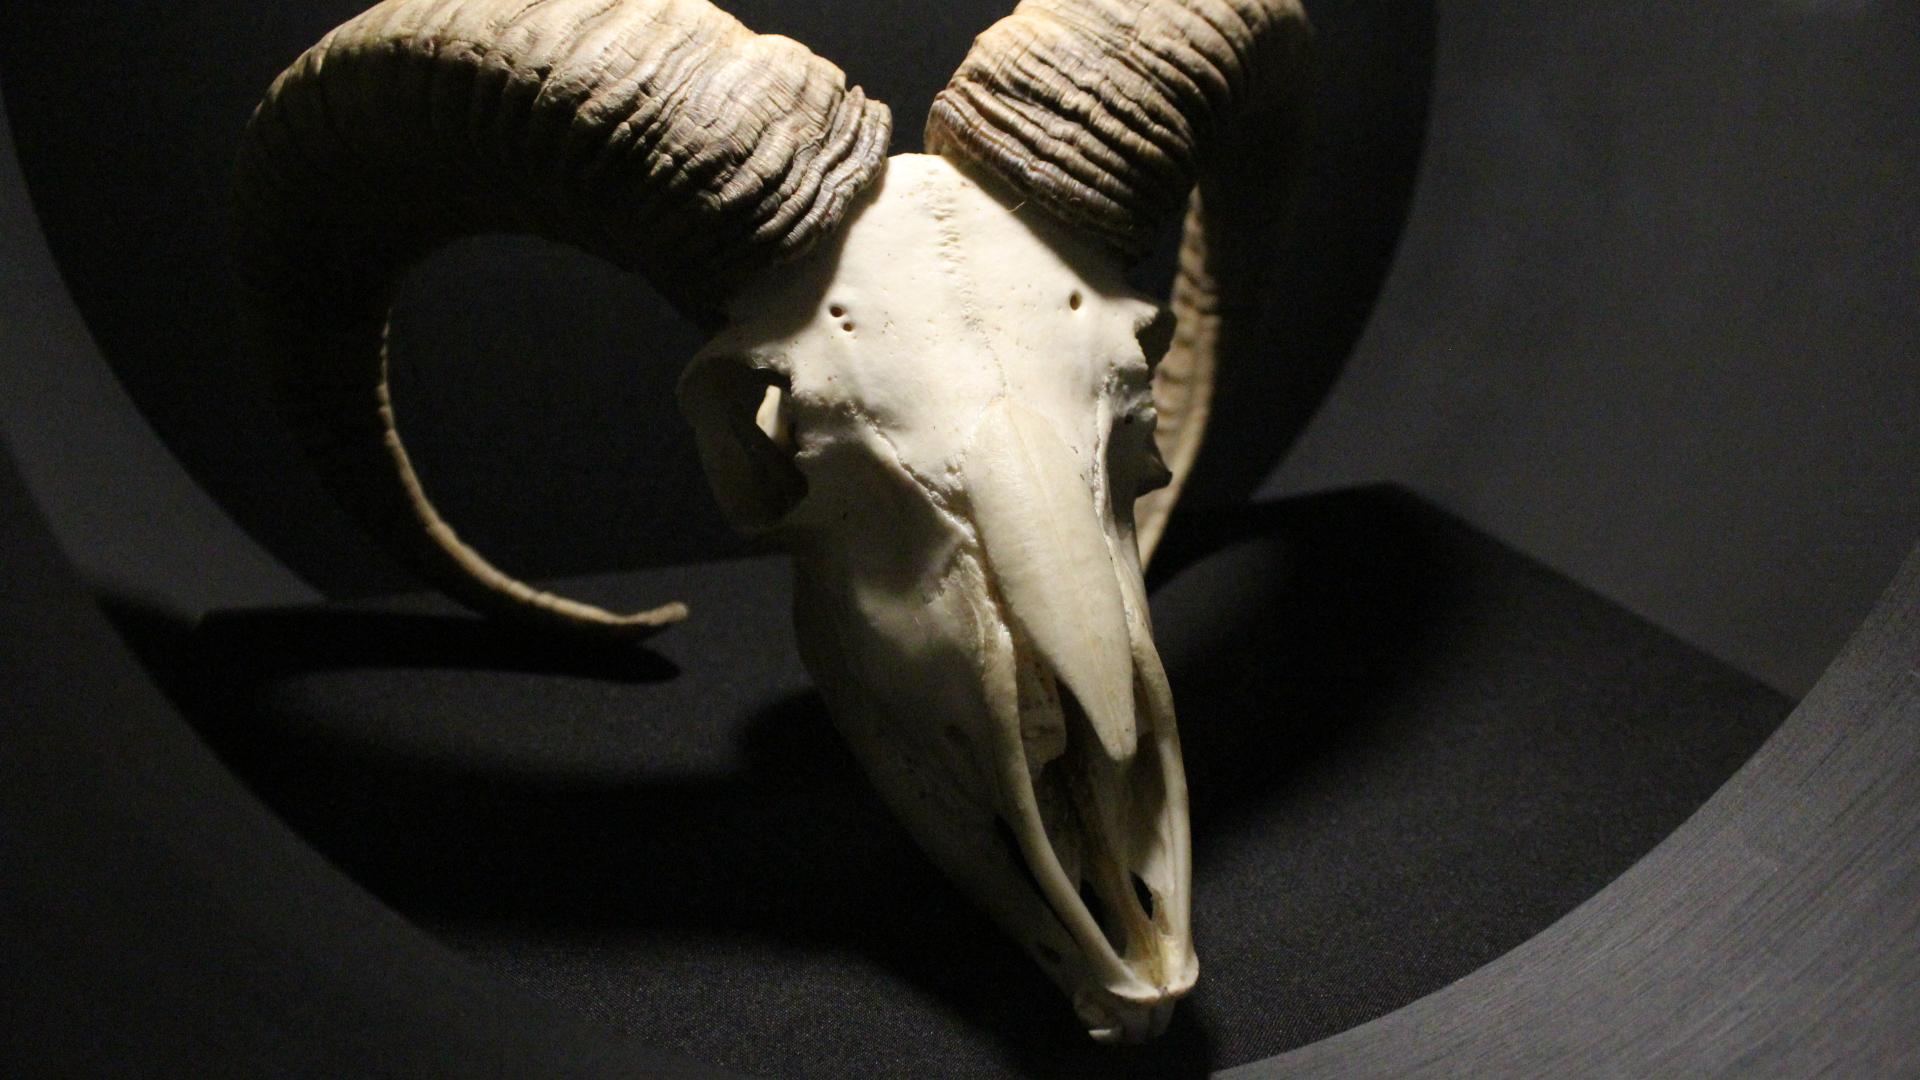 Craneo de cabra en exhibición del museo